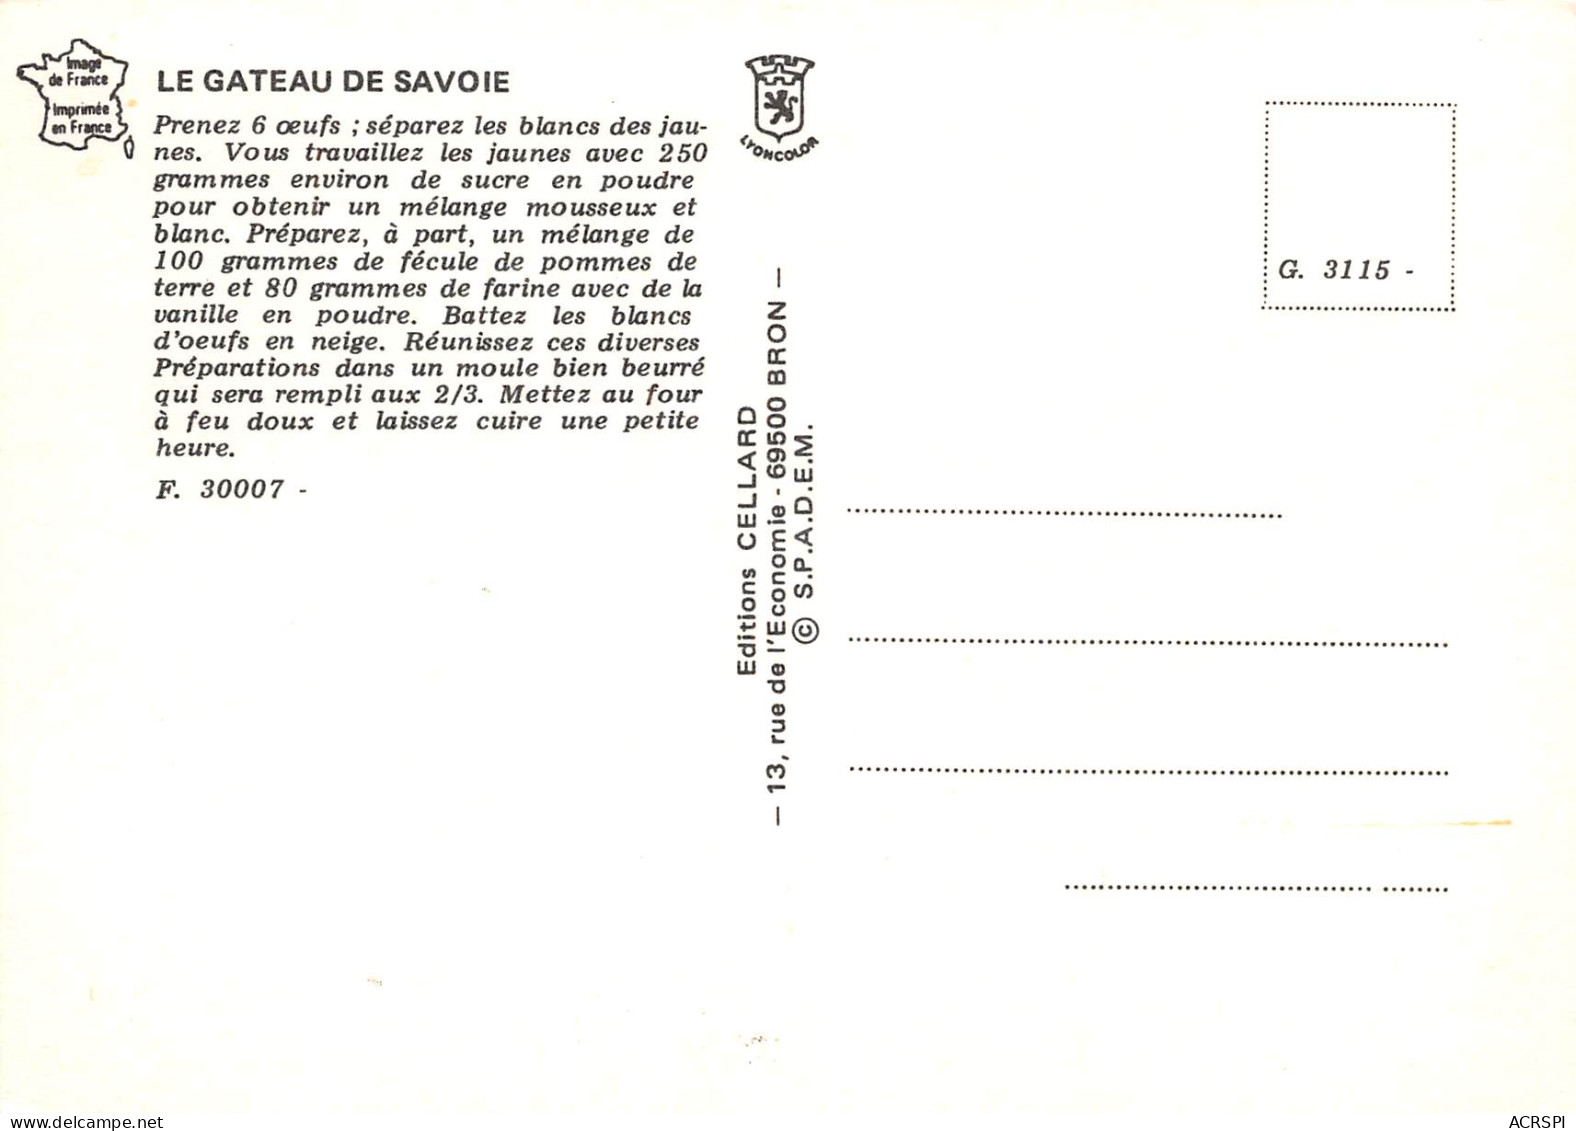 Recette Gateau De Savoie Chambéry N° 72 \MK3029 - Recettes (cuisine)